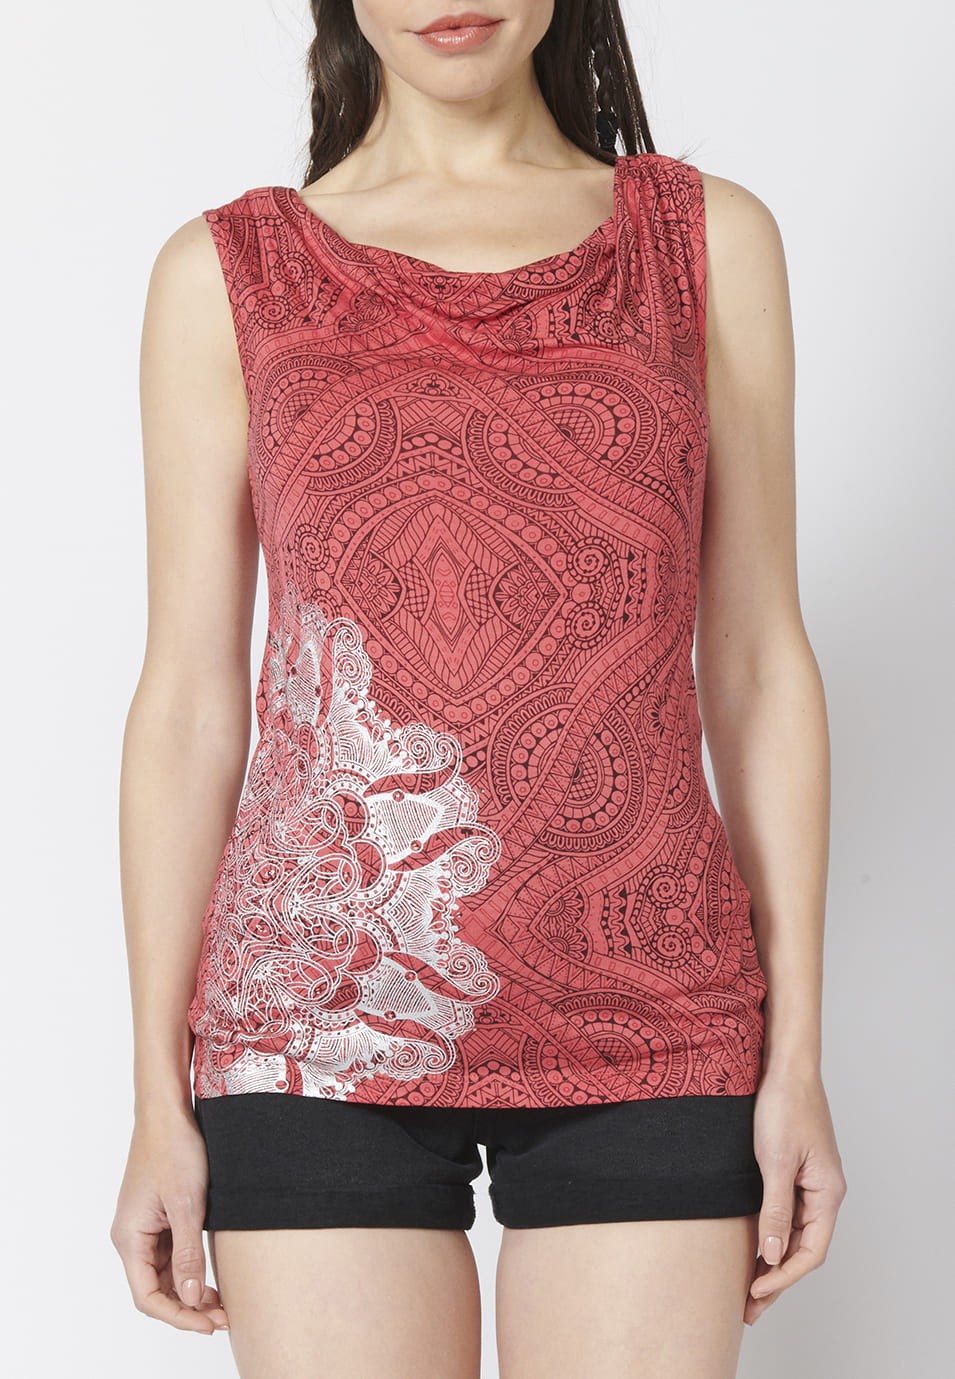 Camiseta Top tirantes con Escote Redondo Holgado y Estampado Étnico para Mujer color Coral 5